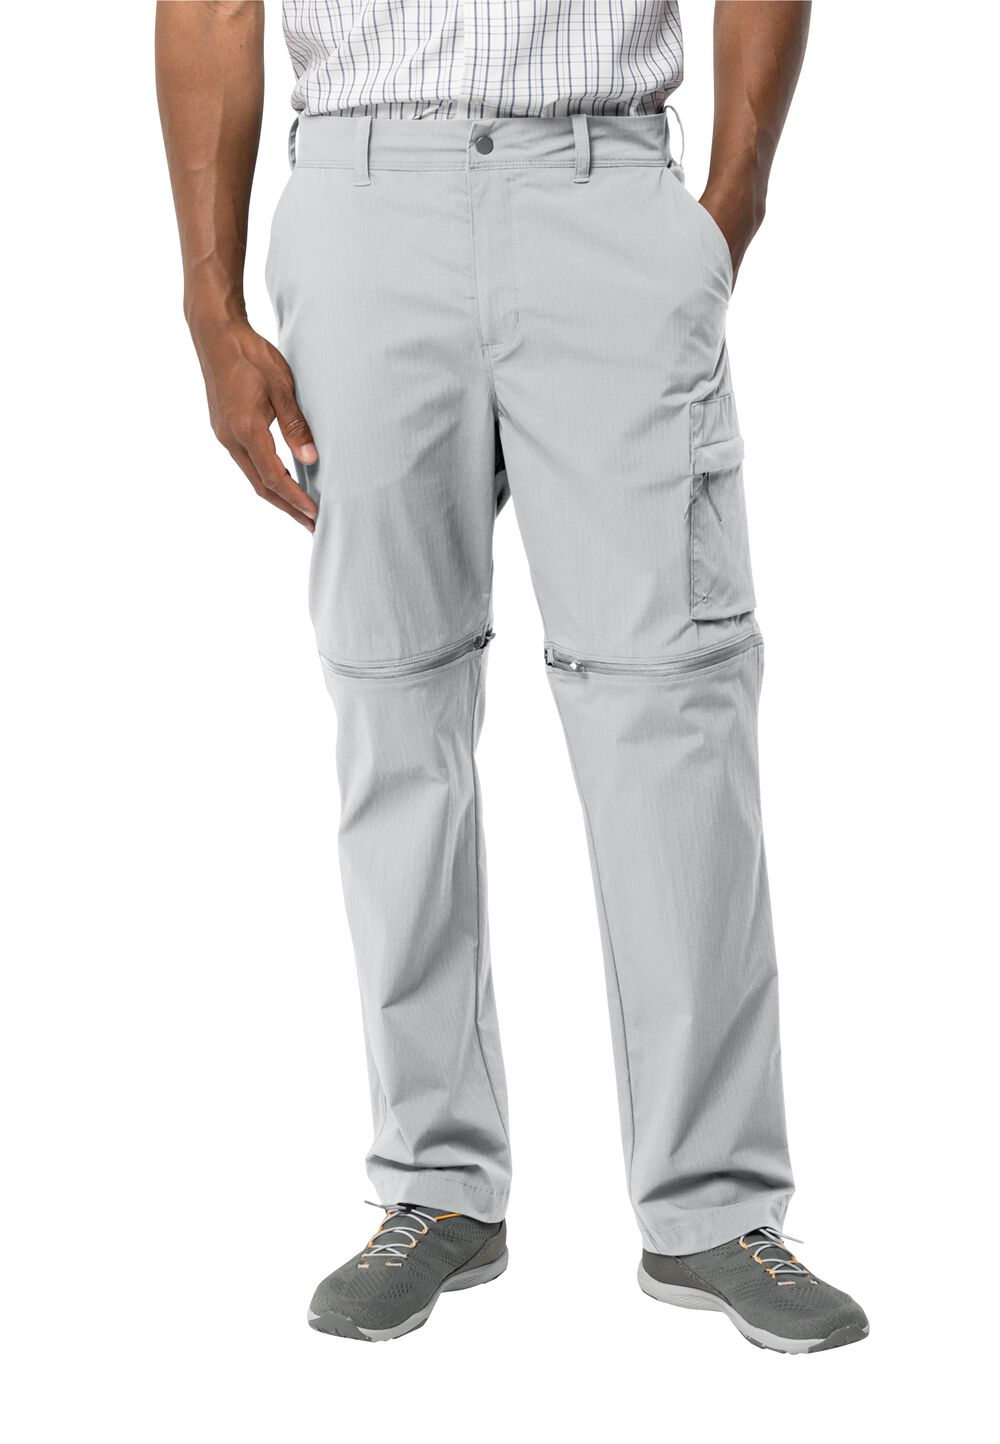 Jack Wolfskin Wanderthirst Zip Pants Men Zip-Off-broek Heren 50S grijs cool grey